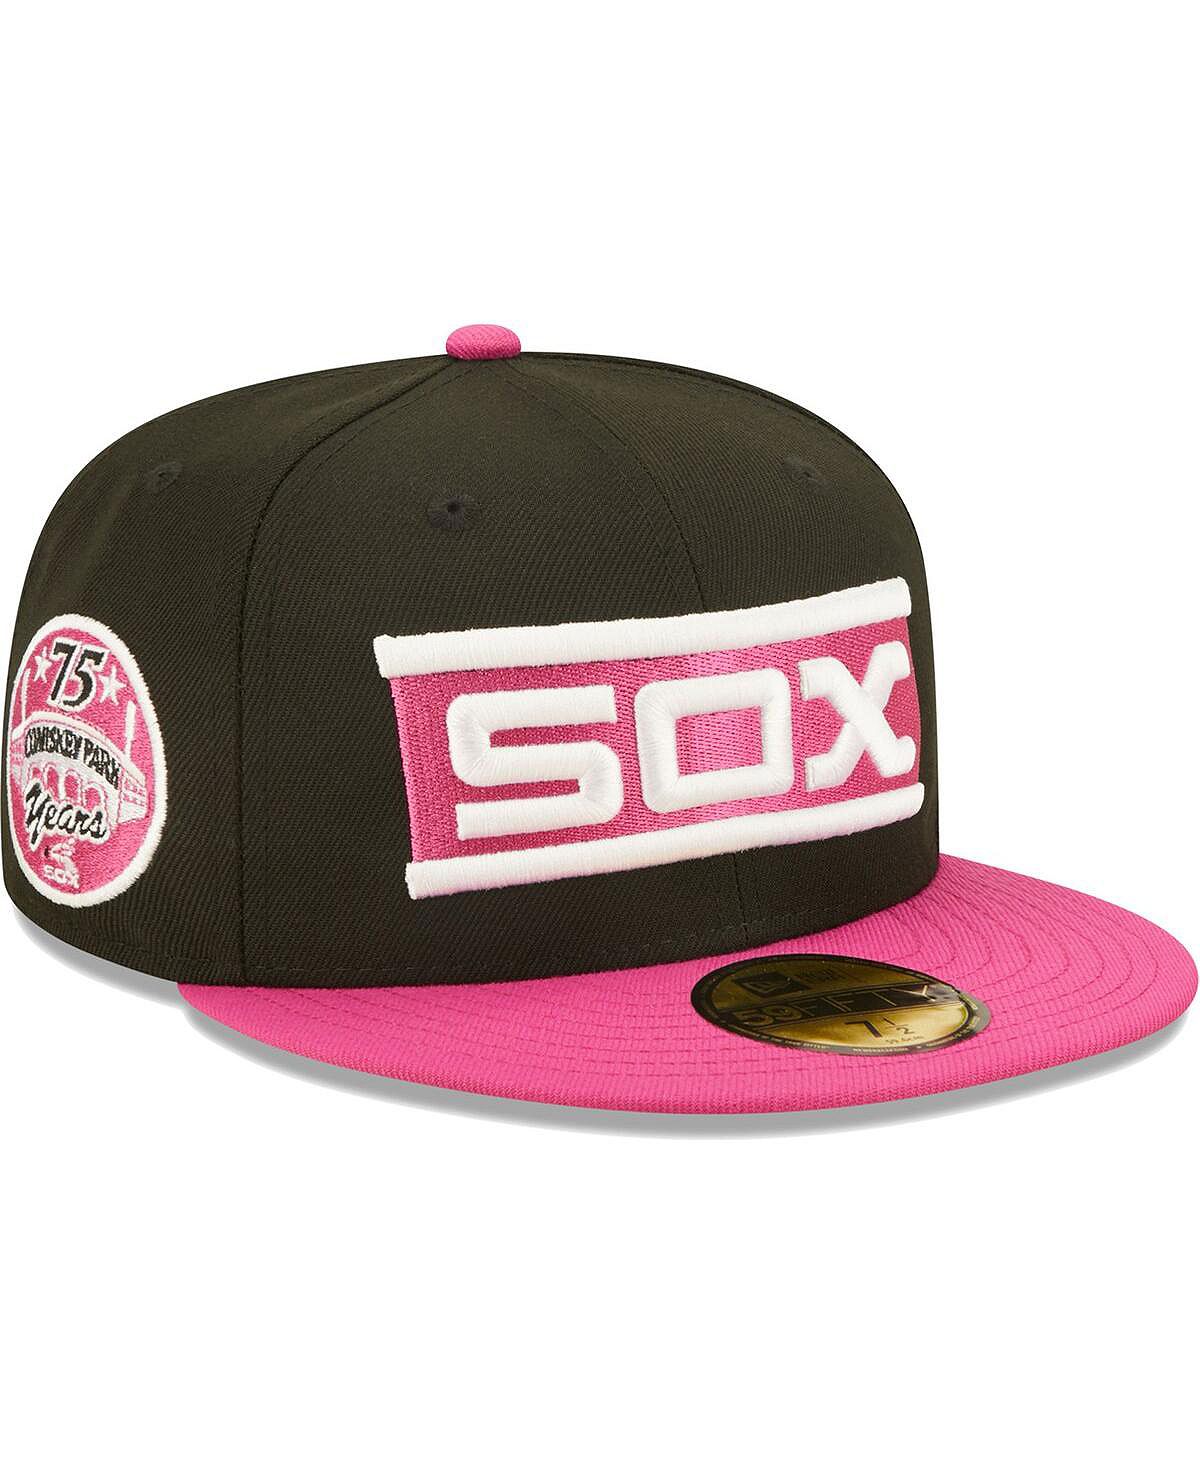 Мужская черно-розовая приталенная шляпа Chicago White Sox Comiskey Park 75th Anniversary Passion 59FIFTY New Era